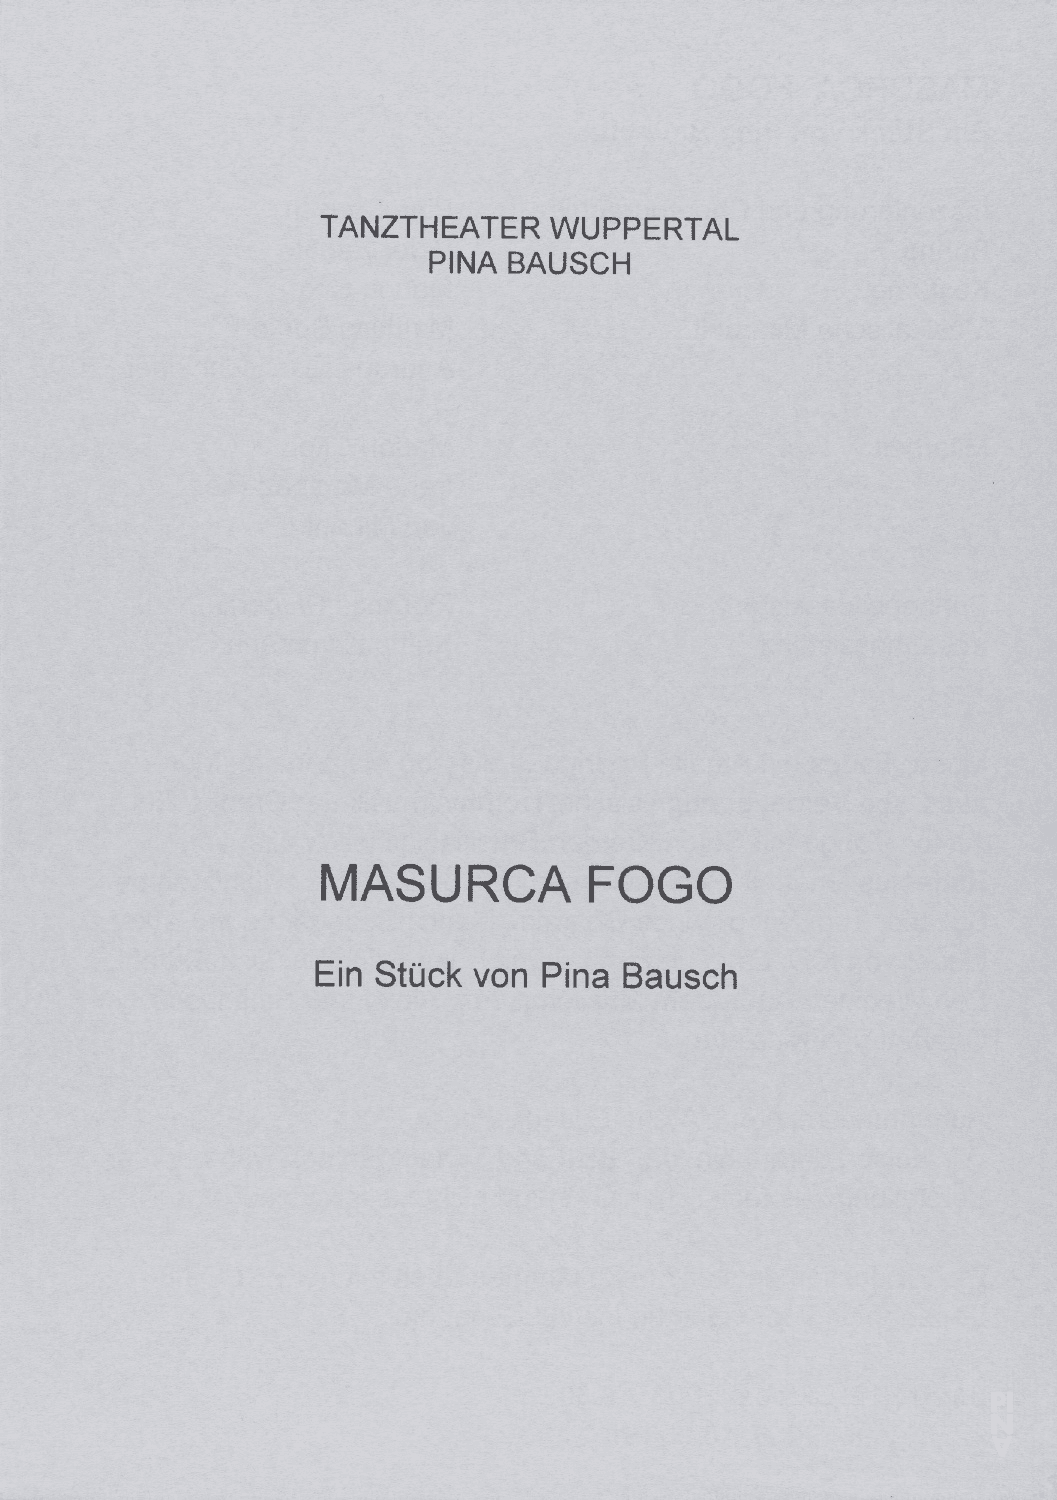 Programme pour « Masurca Fogo » de Pina Bausch avec Tanztheater Wuppertal à Wuppertal, 9 oct. 2003 – 12 oct. 2003